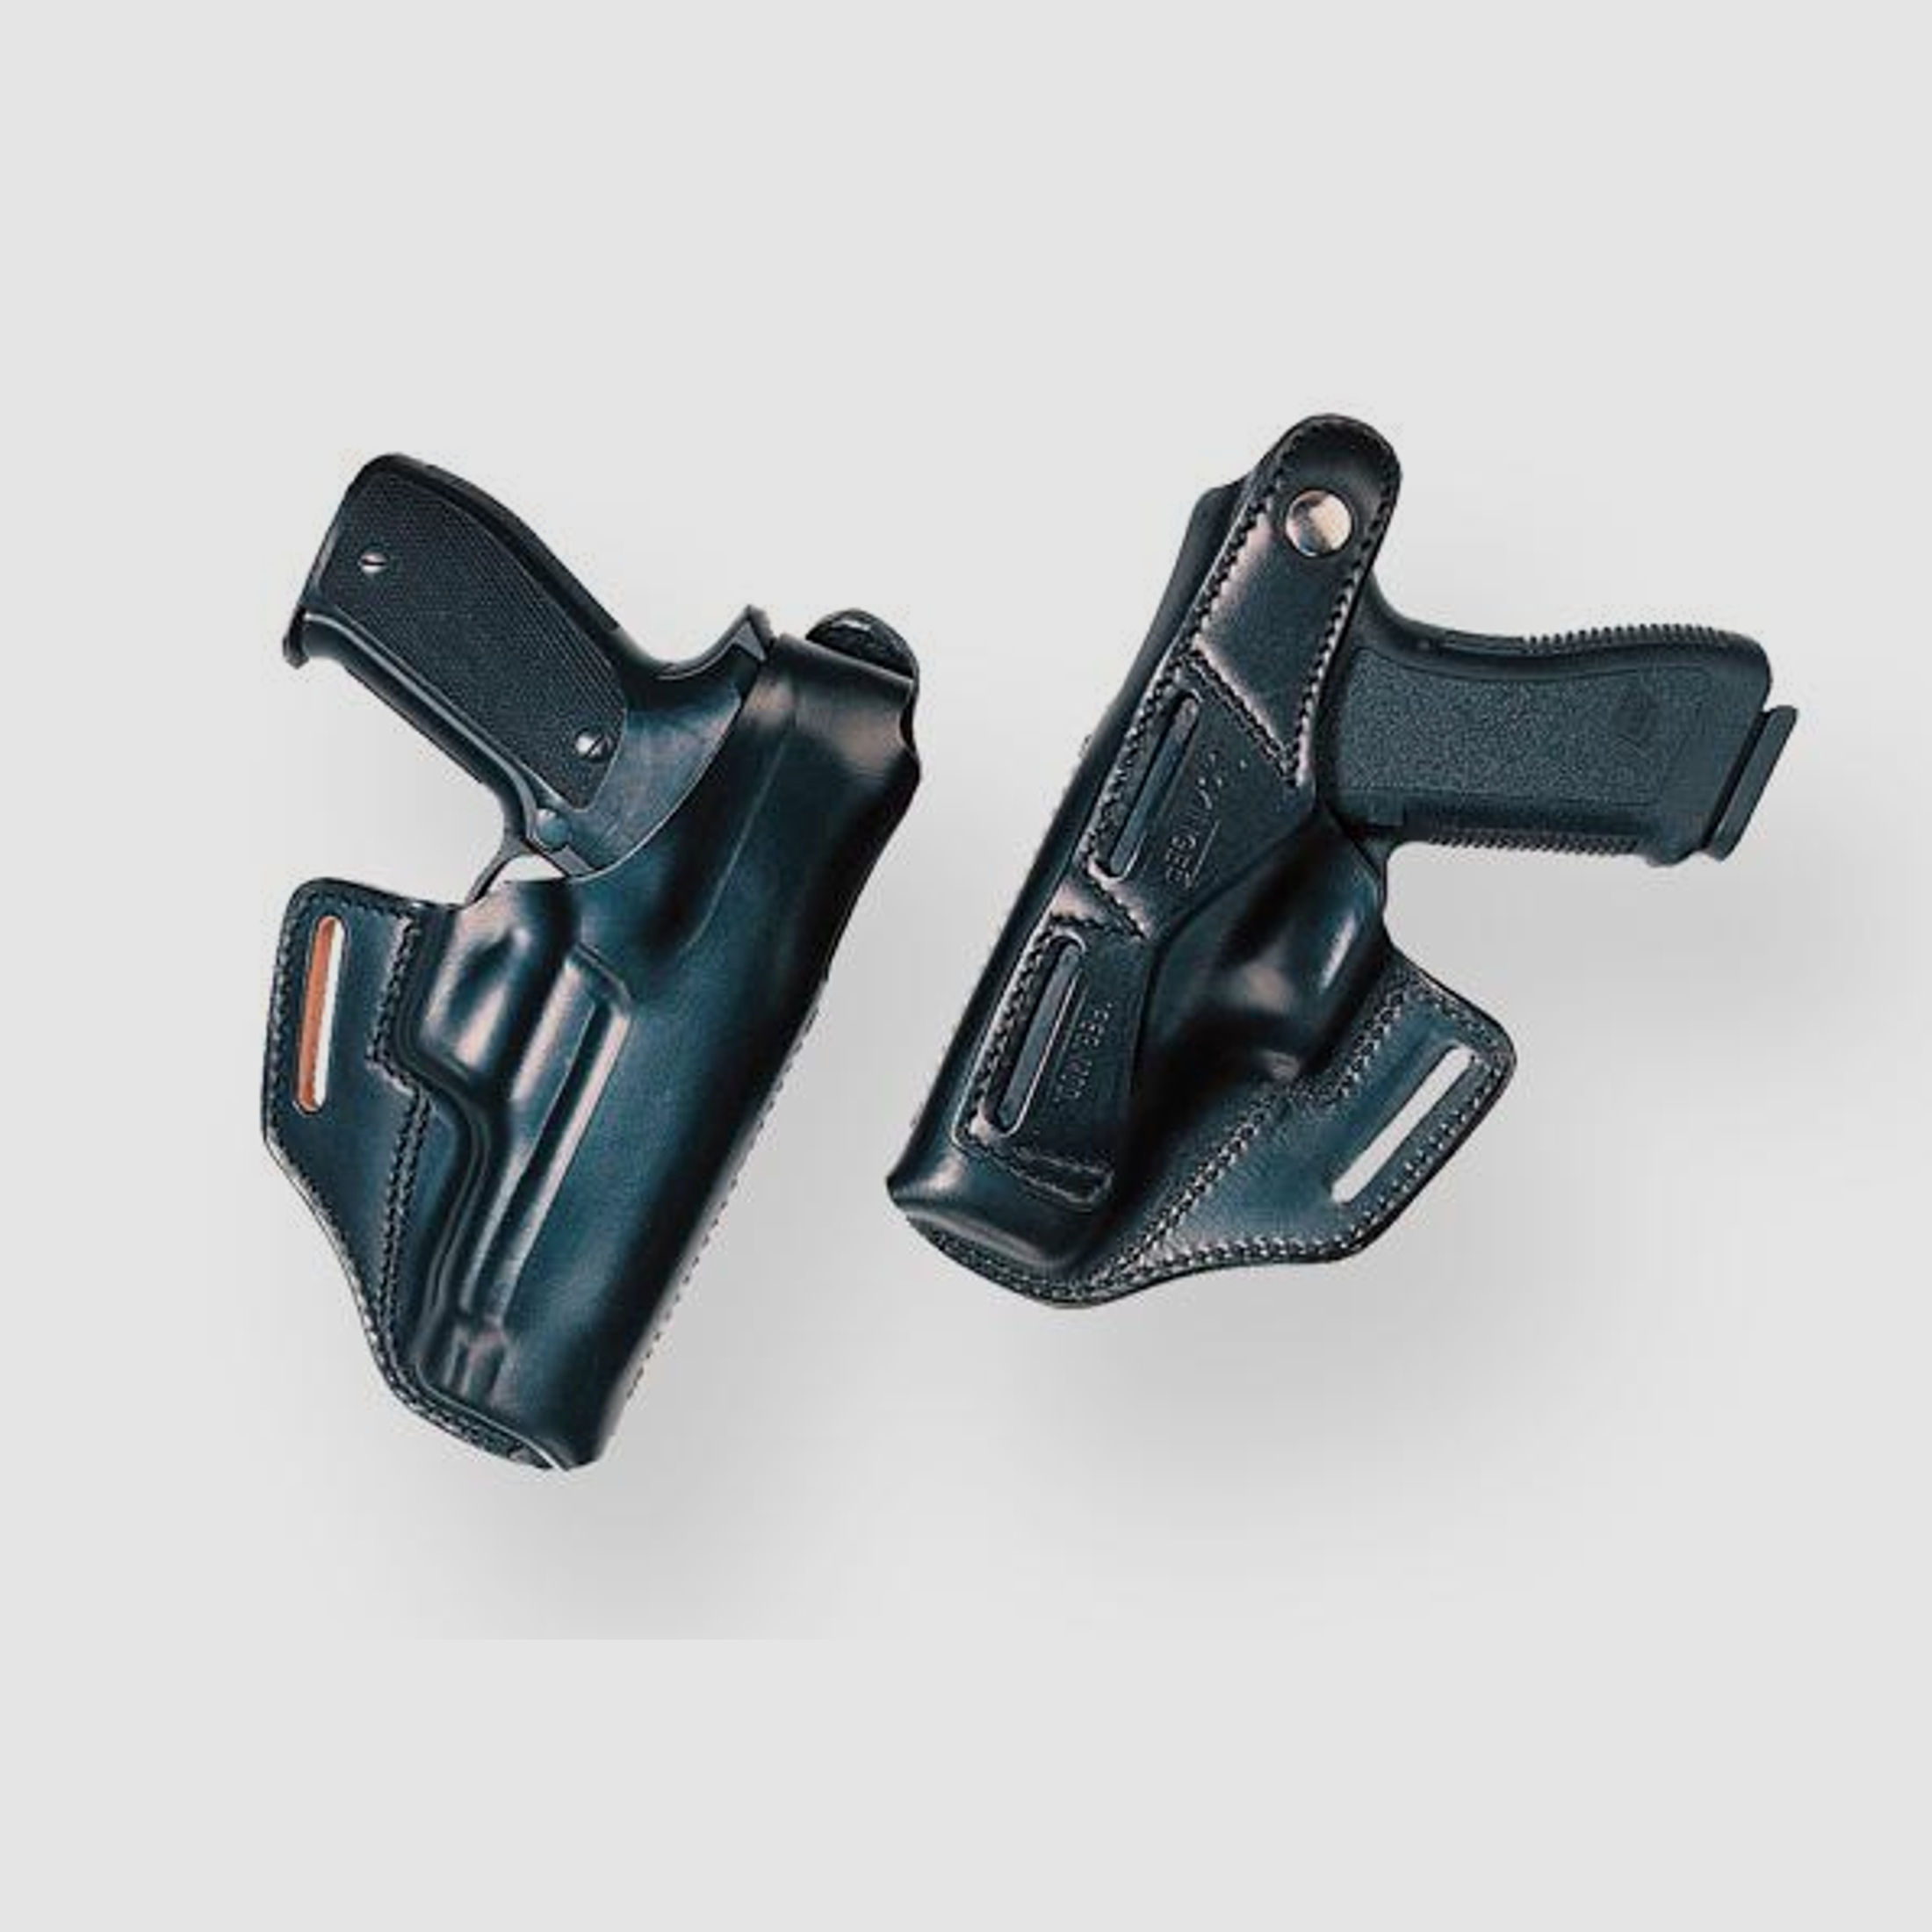 SICKINGER Holster (Leder) f. Glock 20/21, S&W Sigma F 62754  -Belt Master schwarz